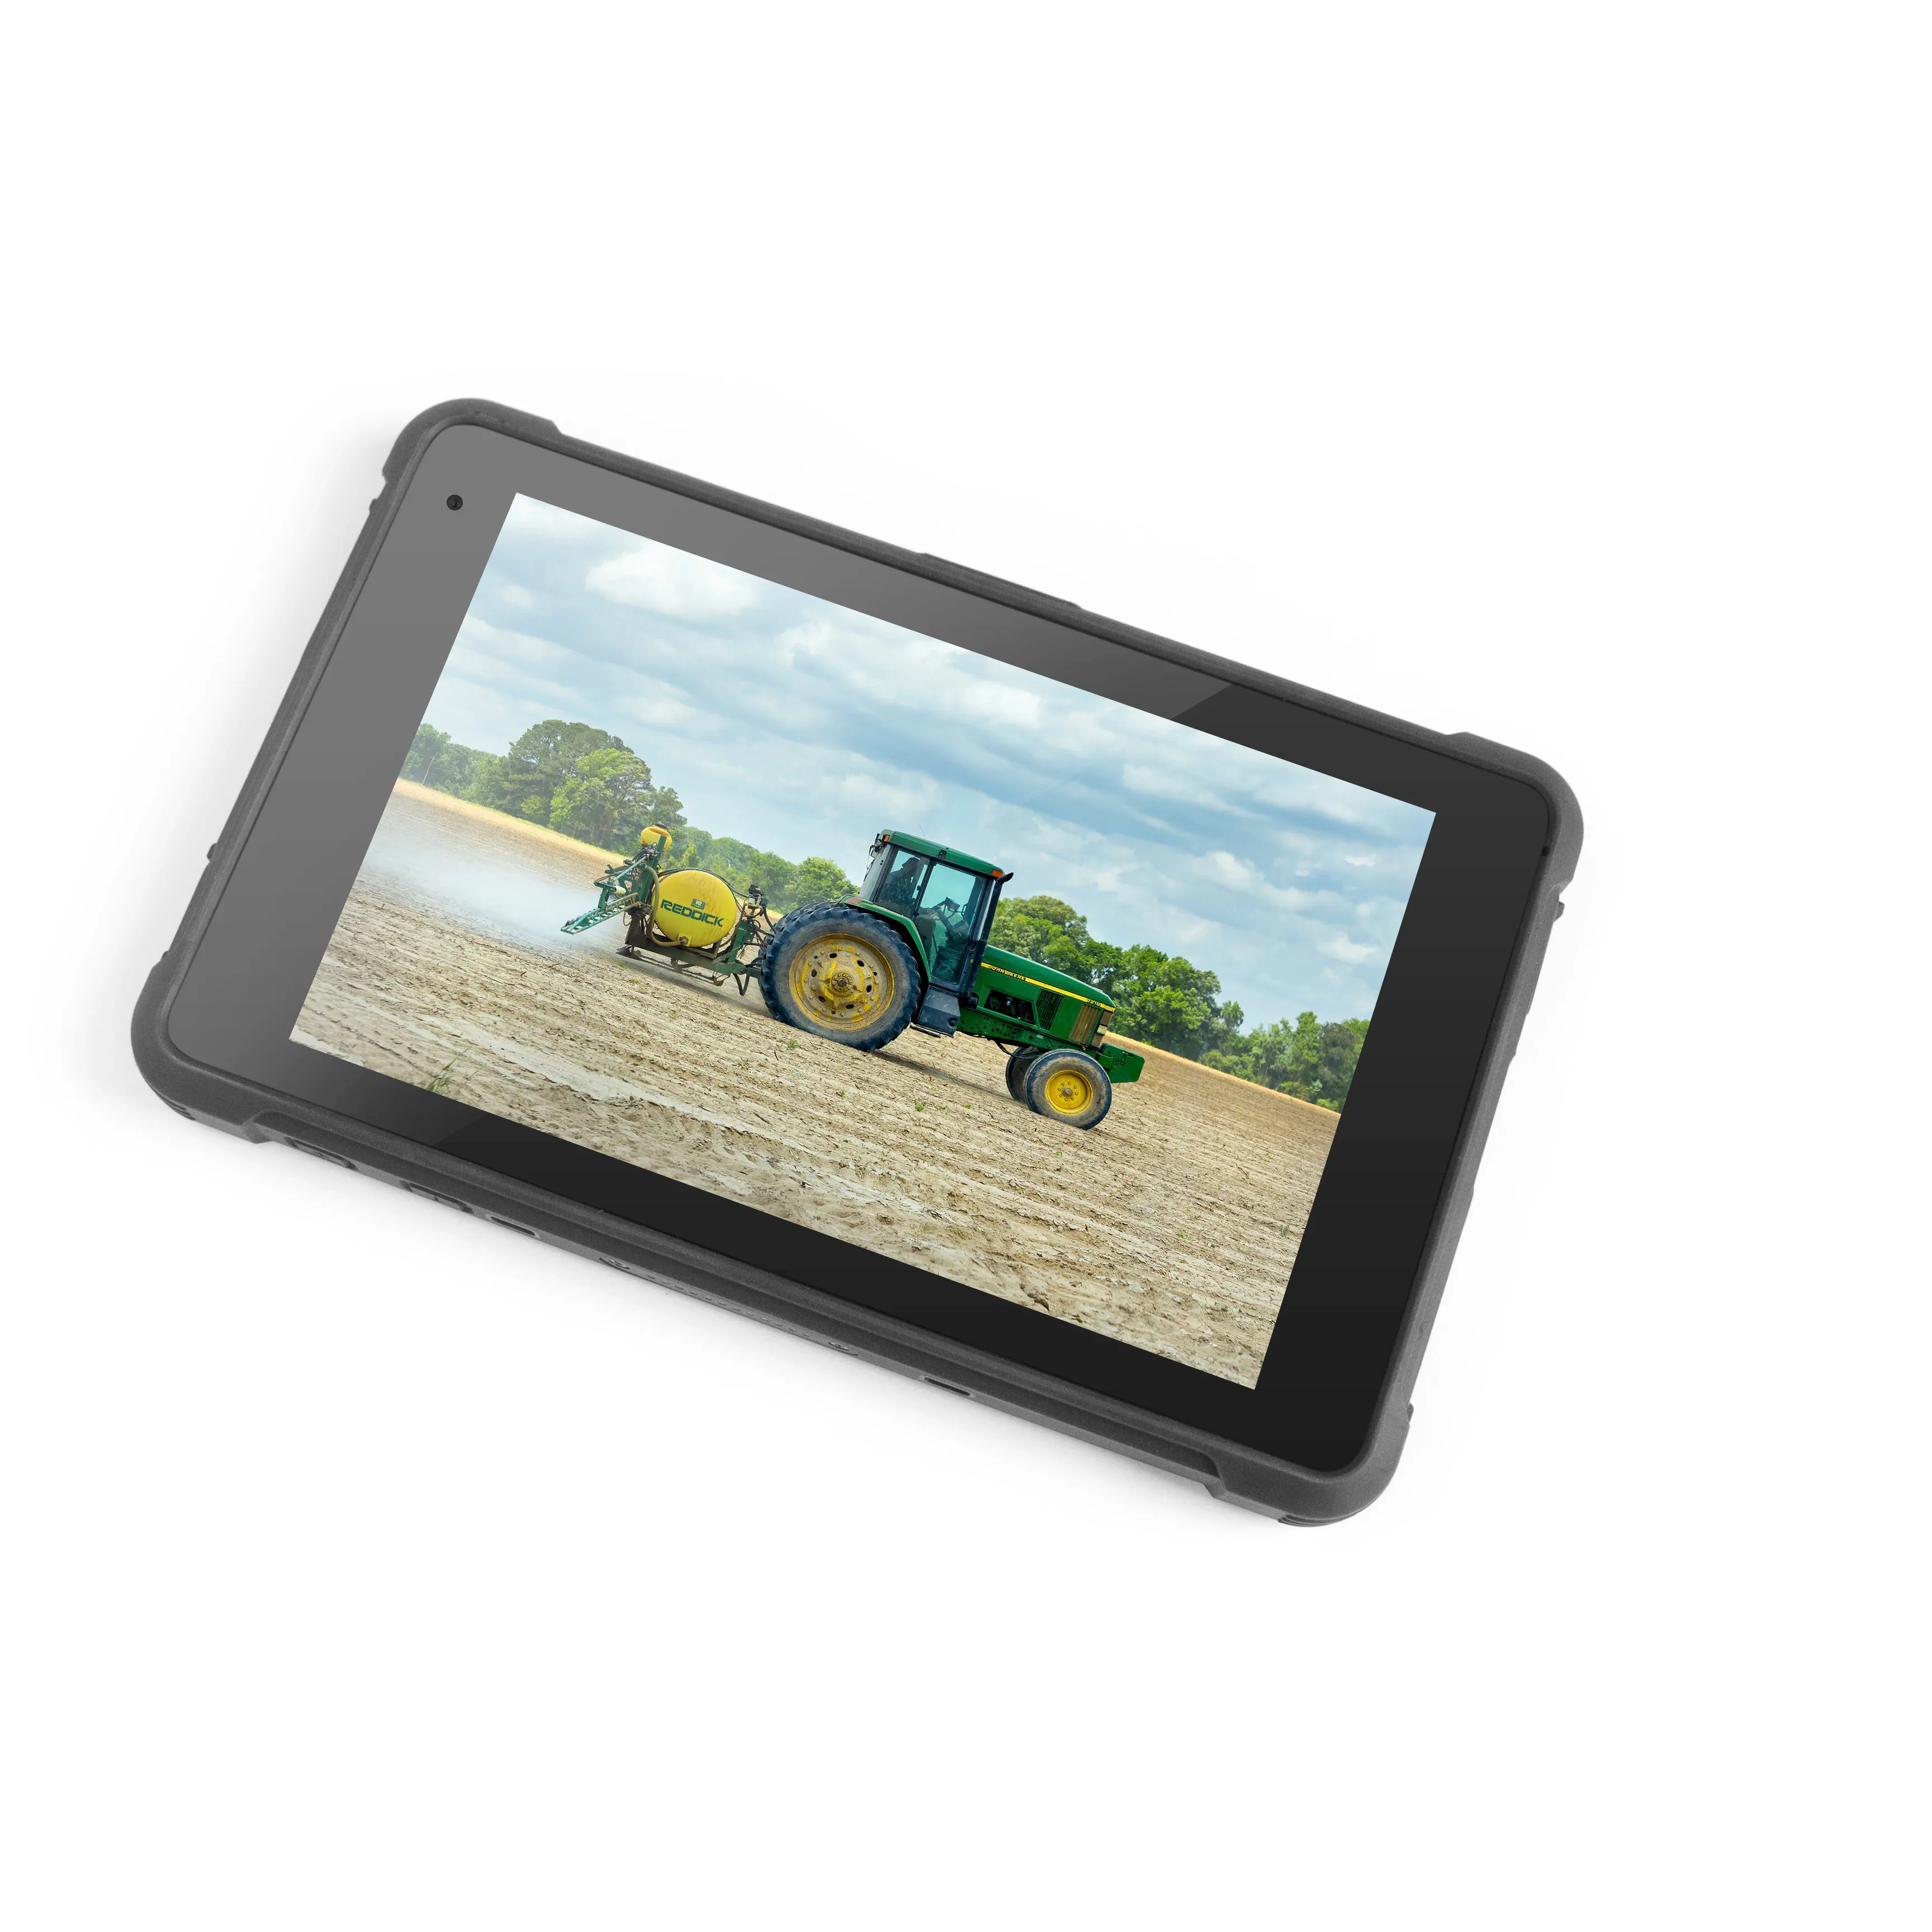 8 Zoll Pad Rugged Tablet 9800mAh IP67 Wasserdichtes Tablet Intel Quad Core 4GB 64GB Windows 10 13MP 5MP Camera Wifi/ BT/GPS/NFC